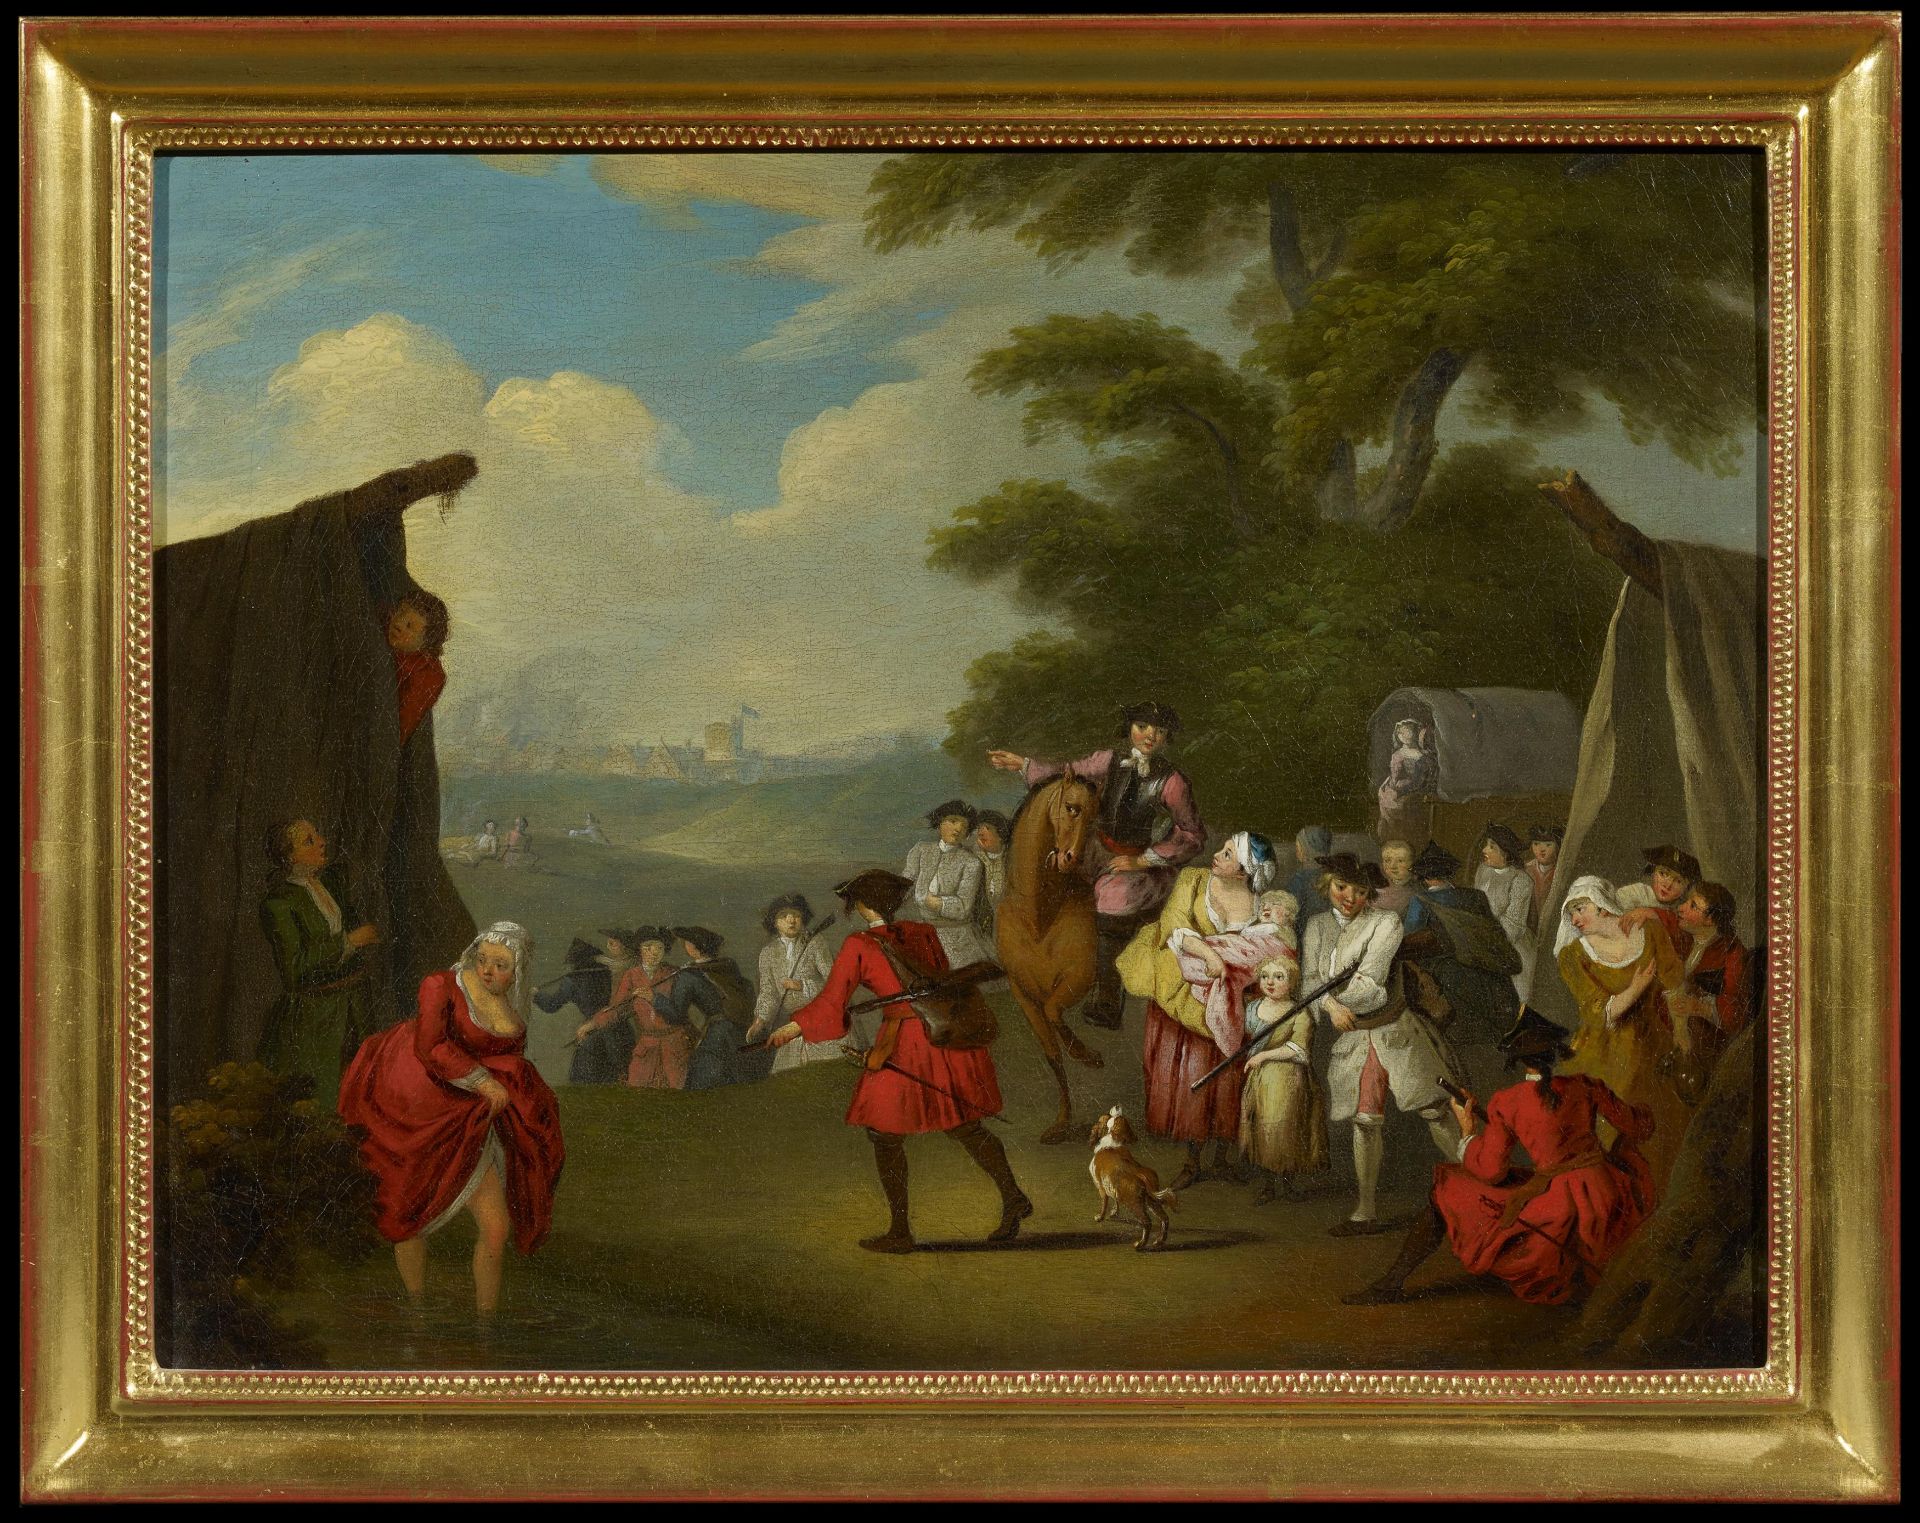 Schenau, Johann Eleazar1737 Großschönau (Lausitz) - 1806 DresdenIm Soldatenlager. Öl auf Leinwand. - Bild 2 aus 4